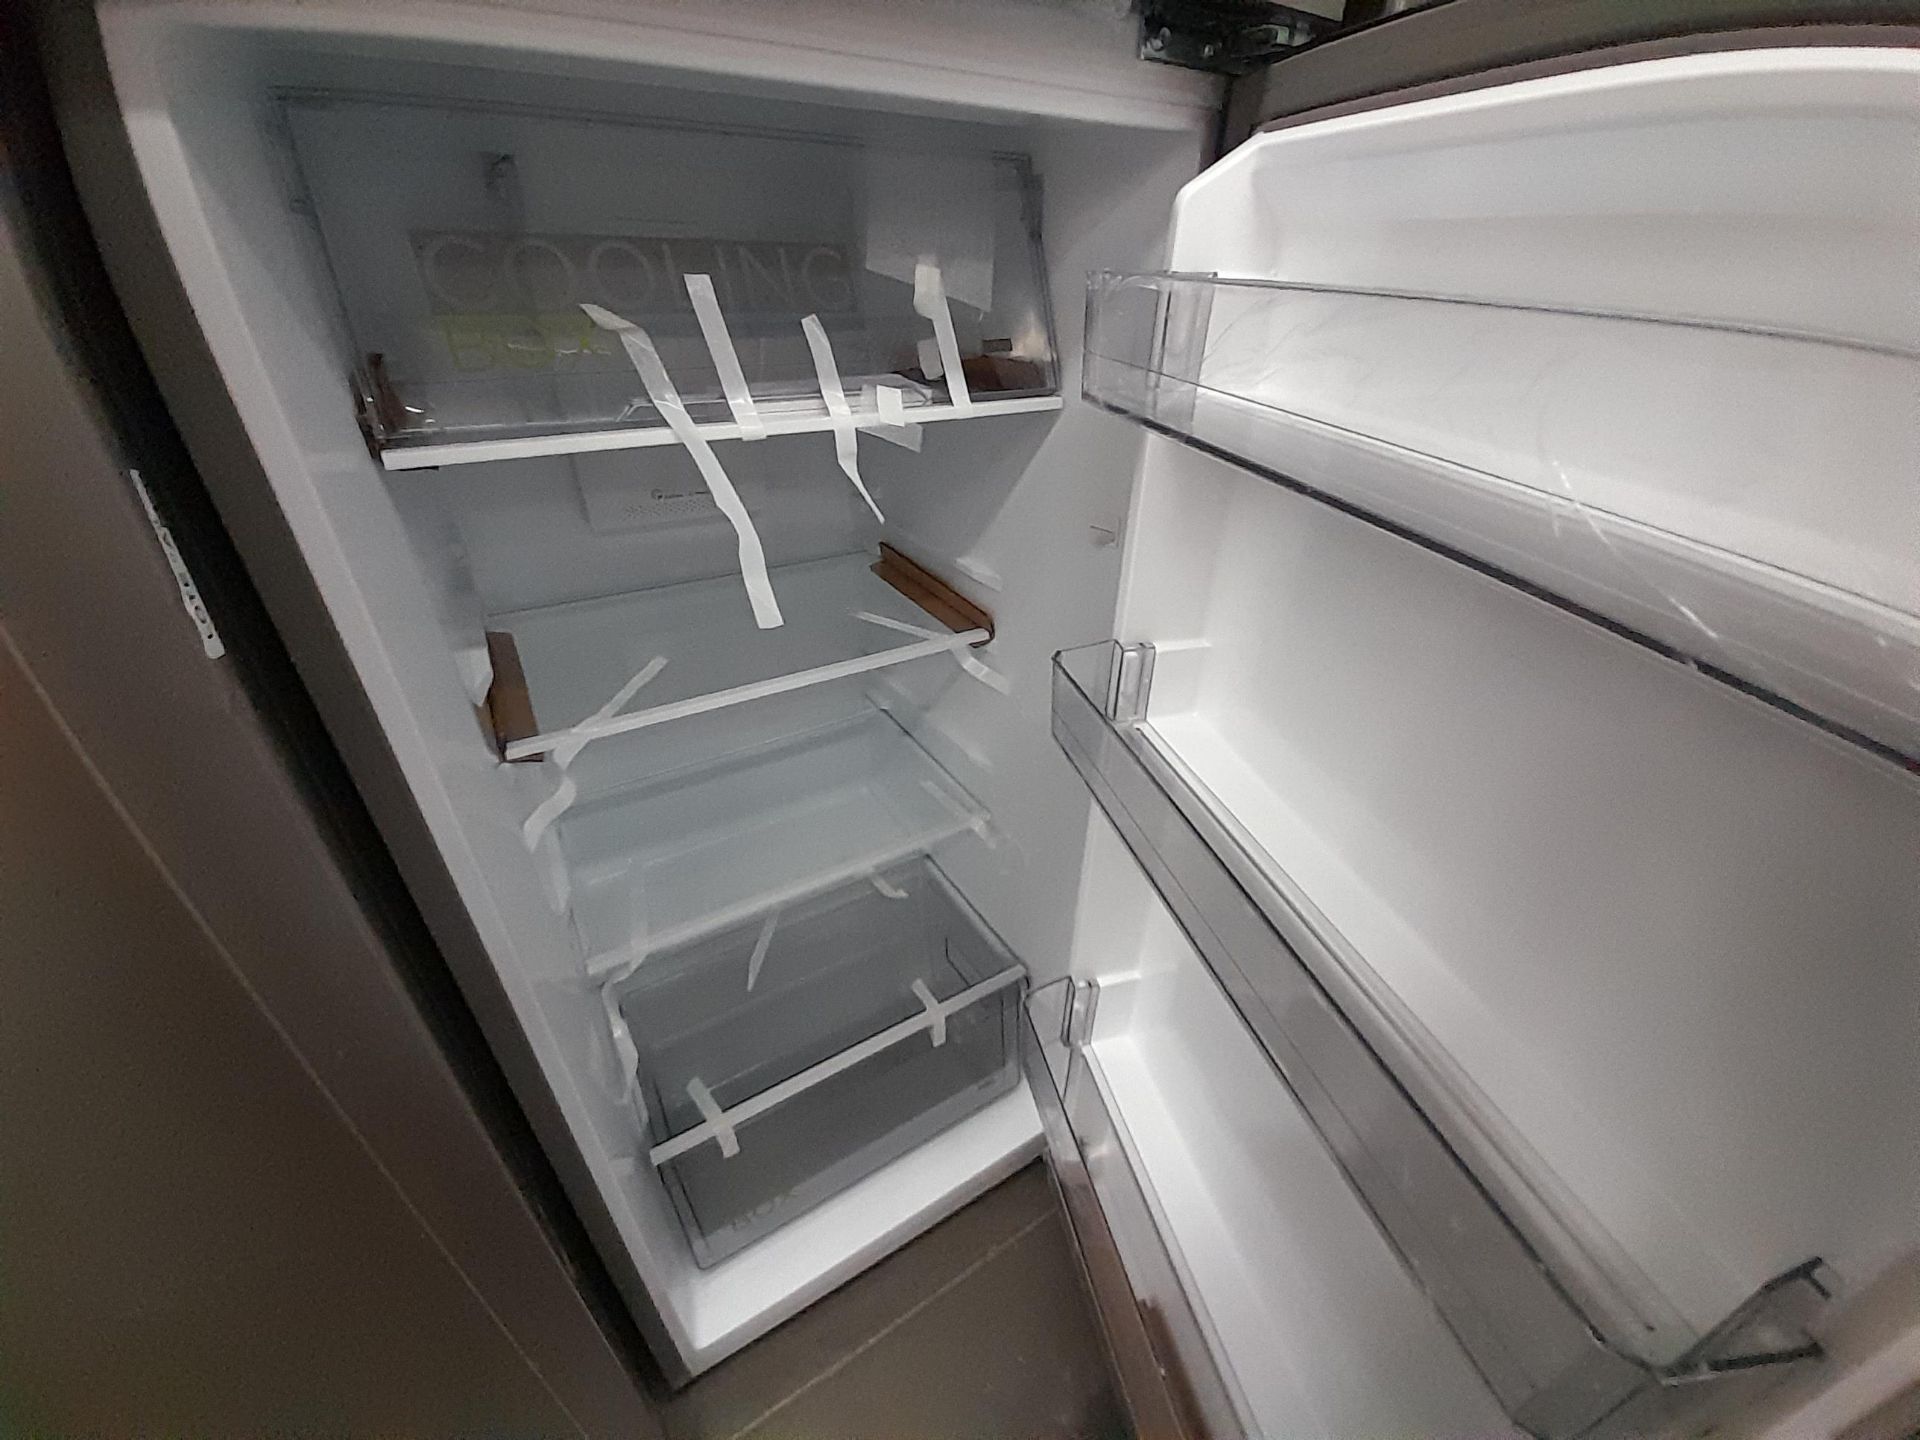 Lote de 2 refrigeradores Contiene: 1 Refrigerador Con Dispensador De Agua Marca MABE, Modelo RMA250 - Image 6 of 8